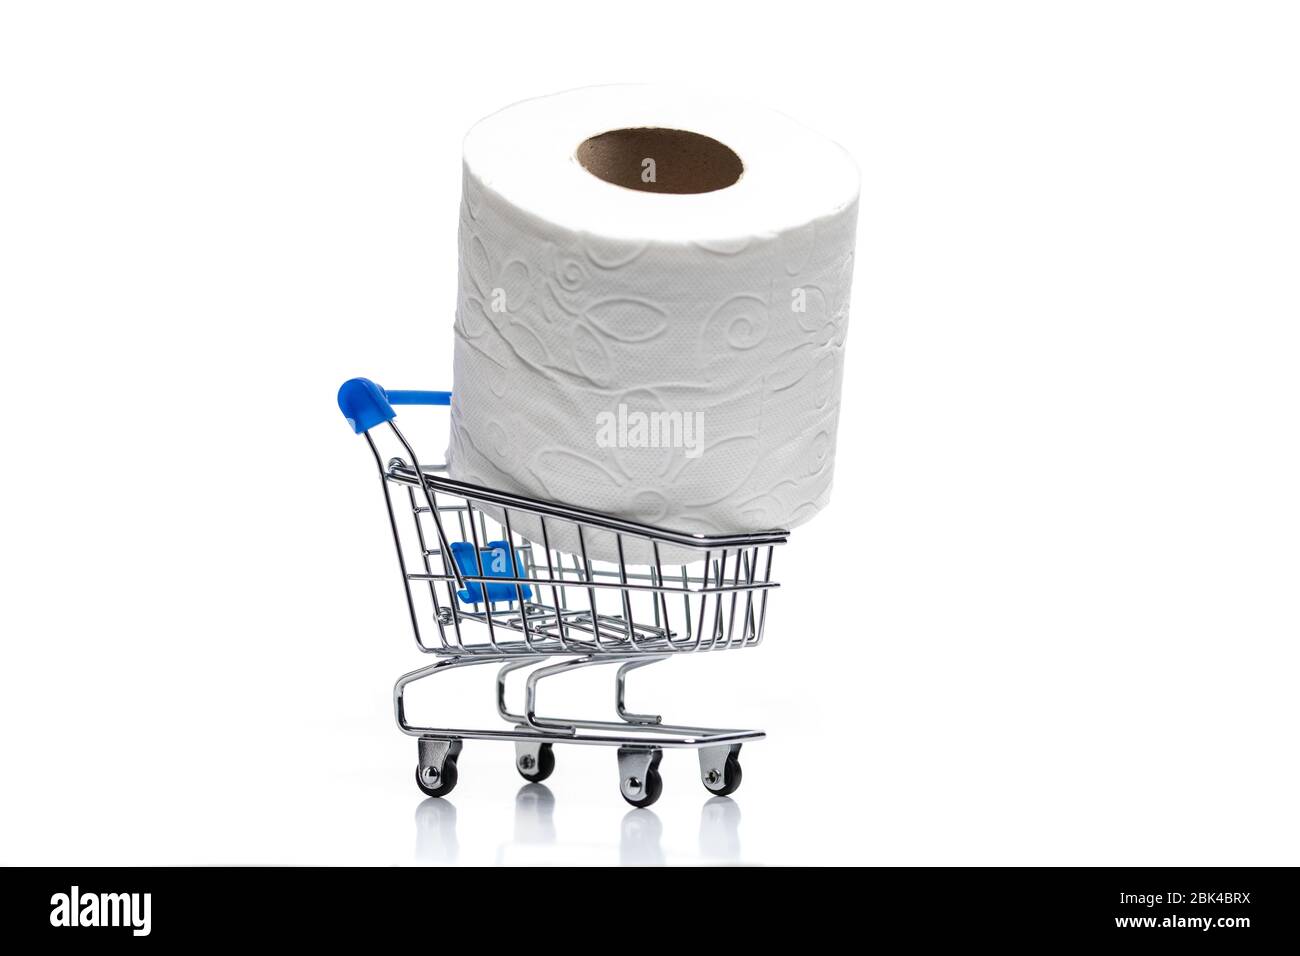 Panier d'épicerie avec toilettes rouleaux de papier derrière. Concept de manque de papier toilette dans les magasins en raison du coronavirus, Covid-19 Banque D'Images